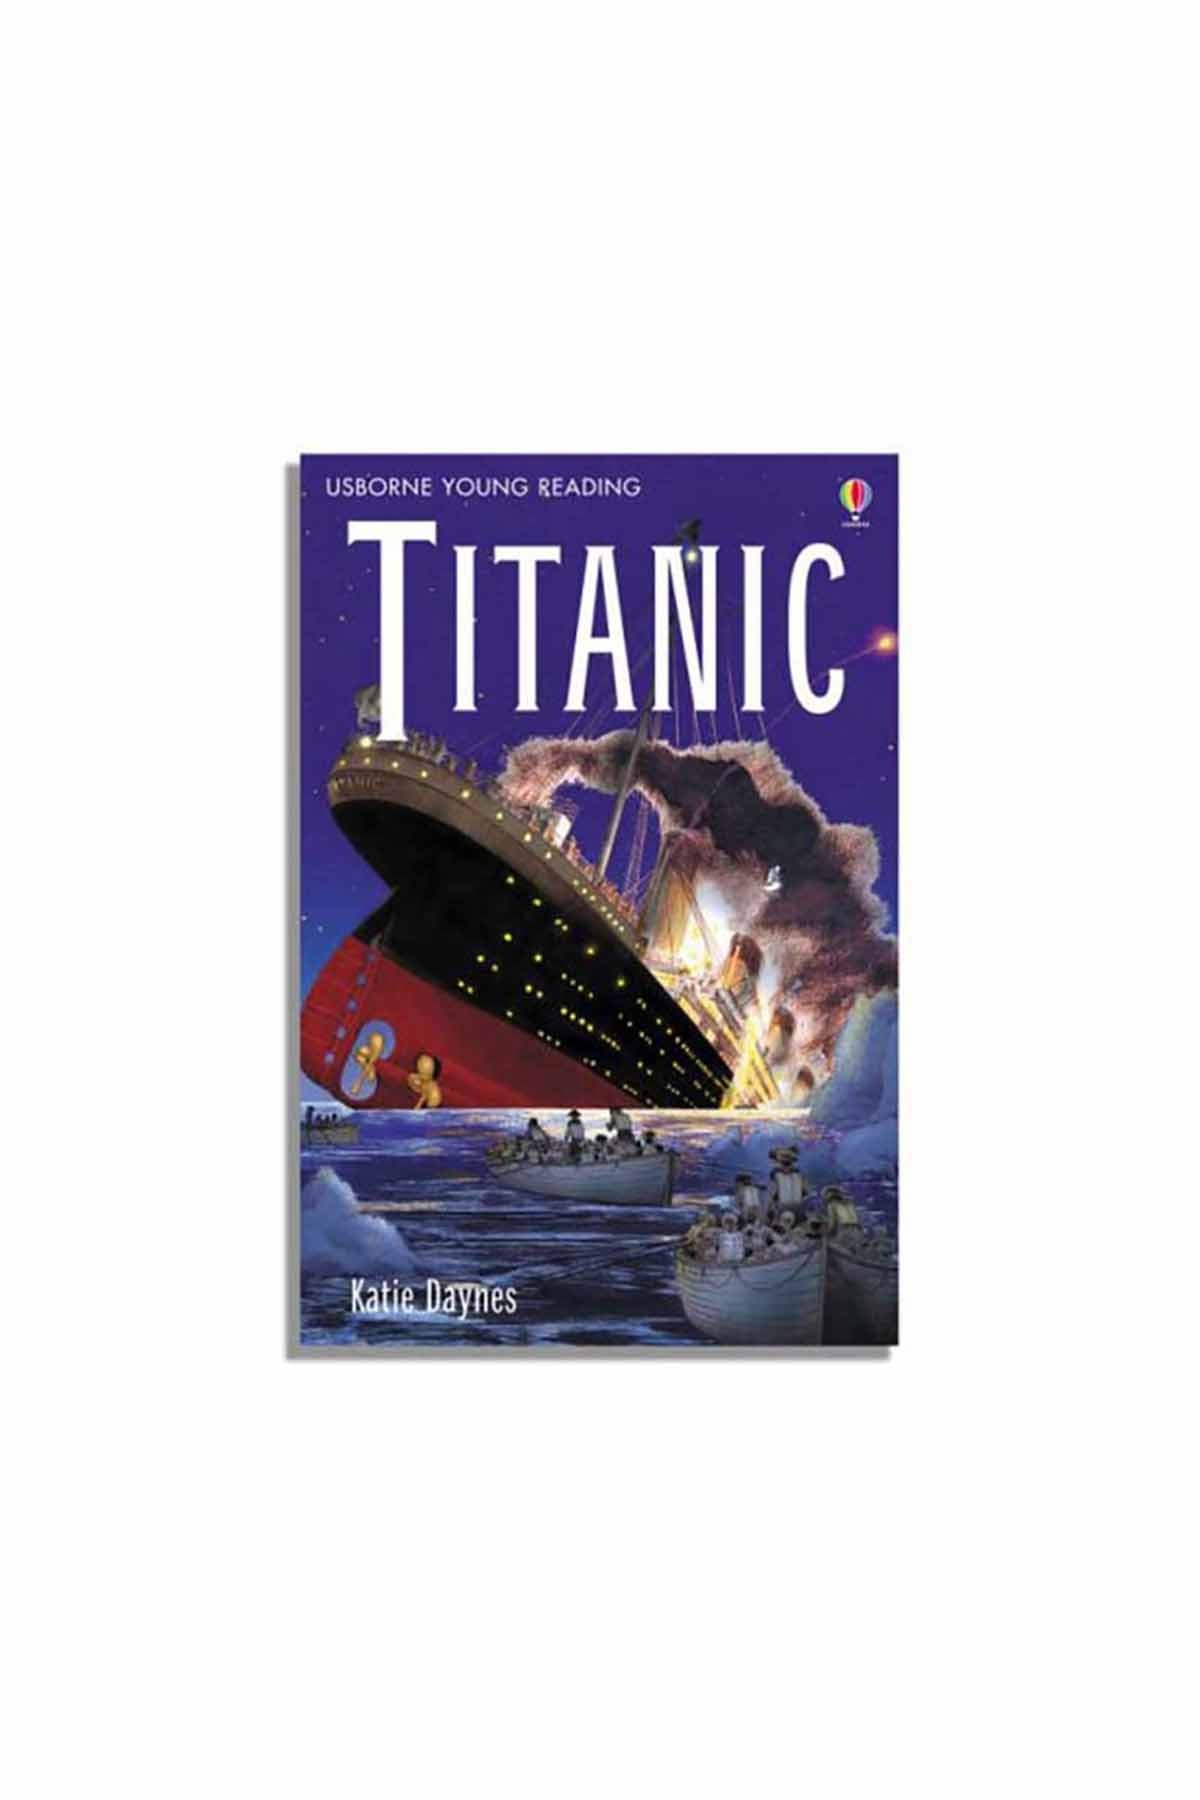 The Usborne Titanic